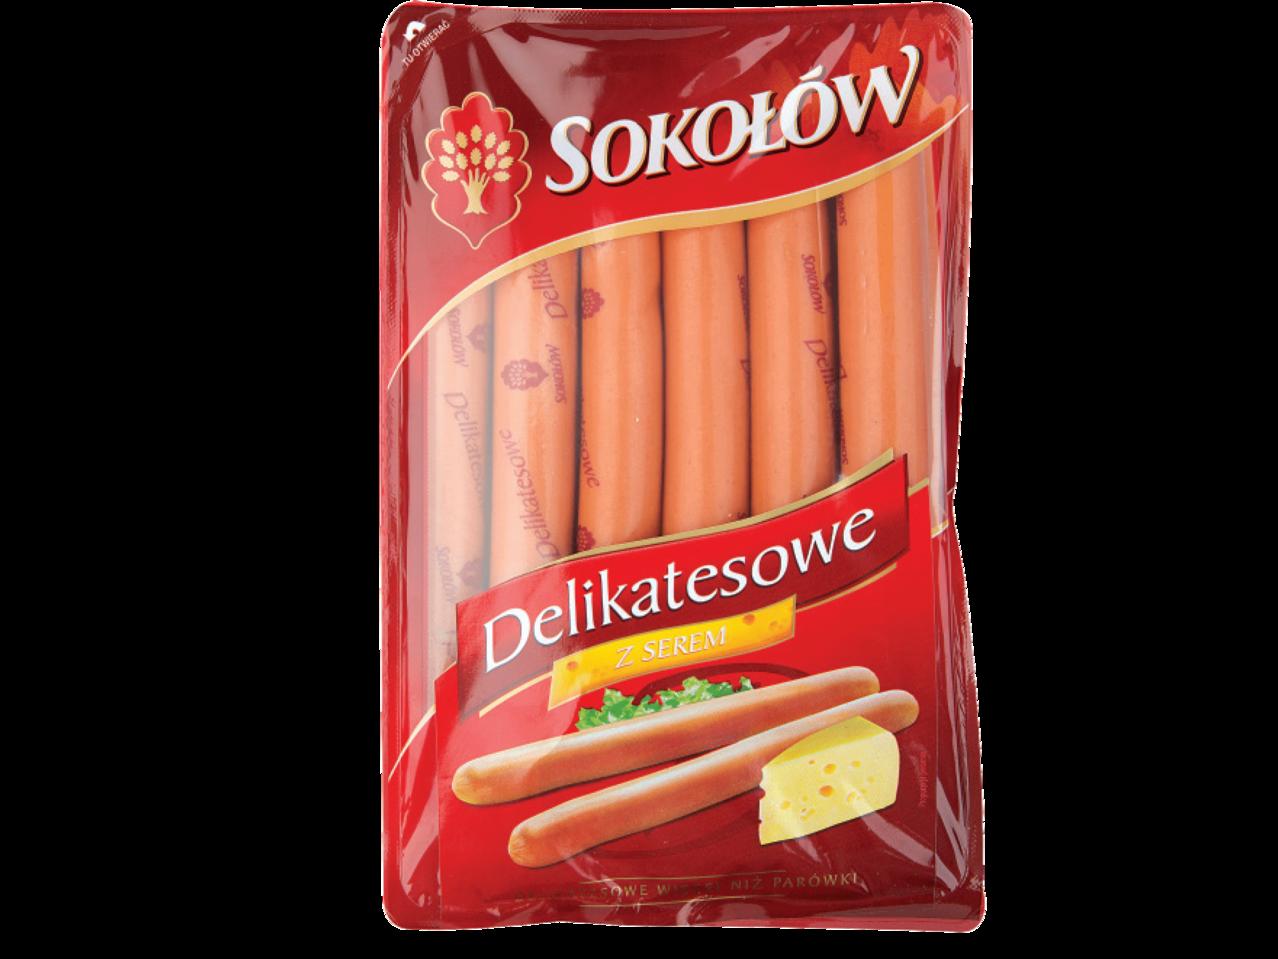 SOKOŁÓW(R) Pork Frankfurters with Cheese